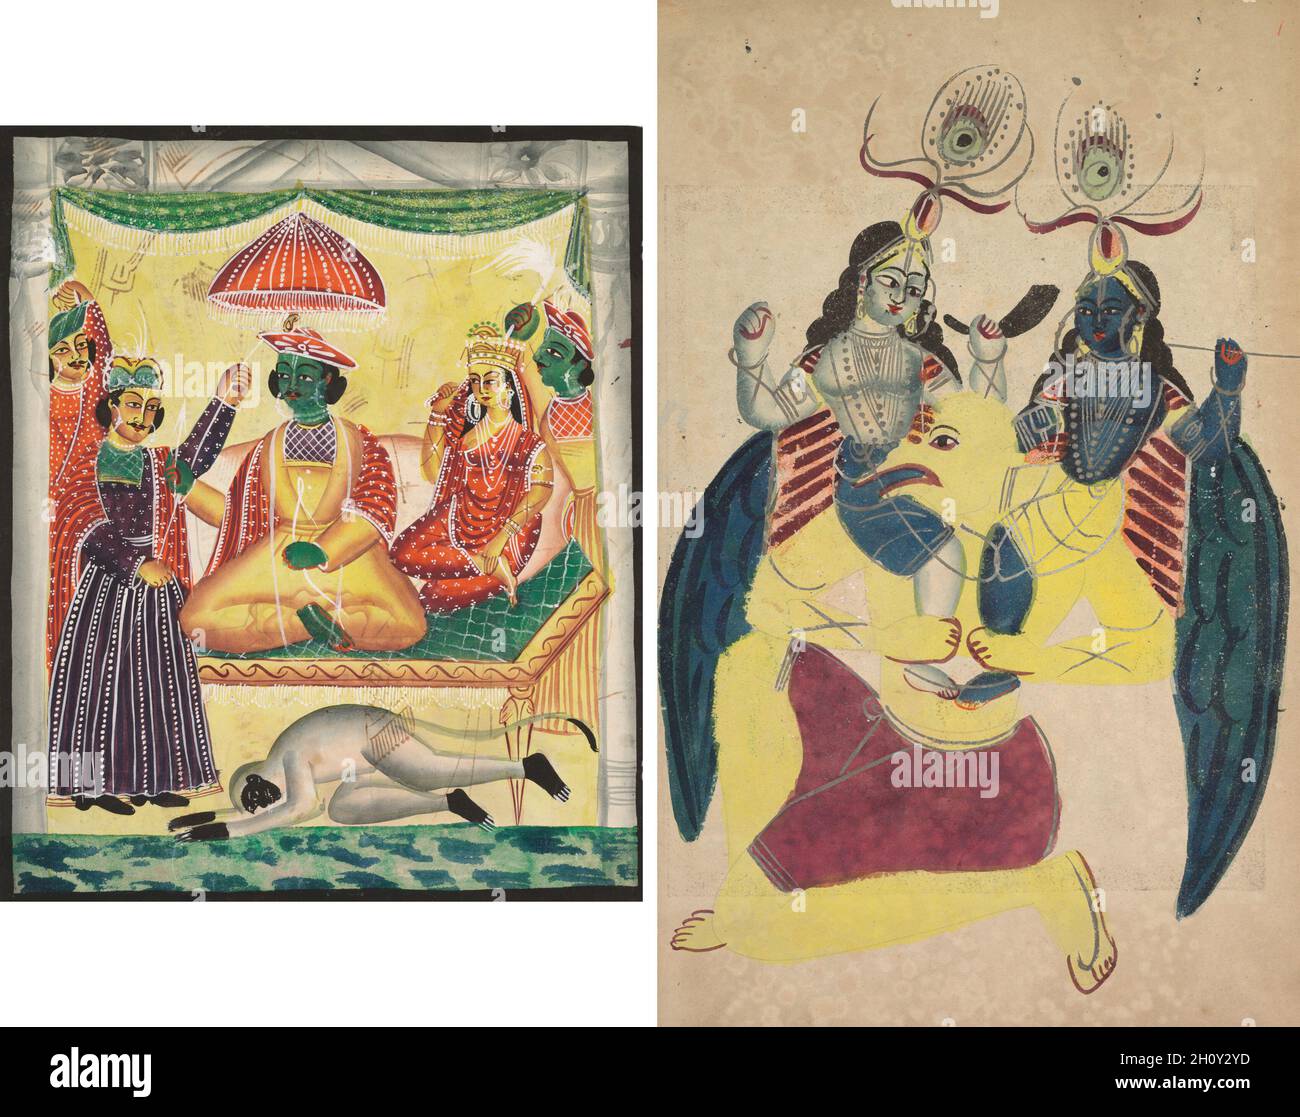 Rama und Sita (recto); Garuda trägt Balarama und Krishna (verso), c. 1890. Ostindien, Bengalen, Kalkata, Kalighat. Aquarell, Graphit, Tinte und Zinn auf Papier; sekundärer Träger: 47.9 x 29.3 cm (18 7/8 x 11 9/16 Zoll). Stockfoto